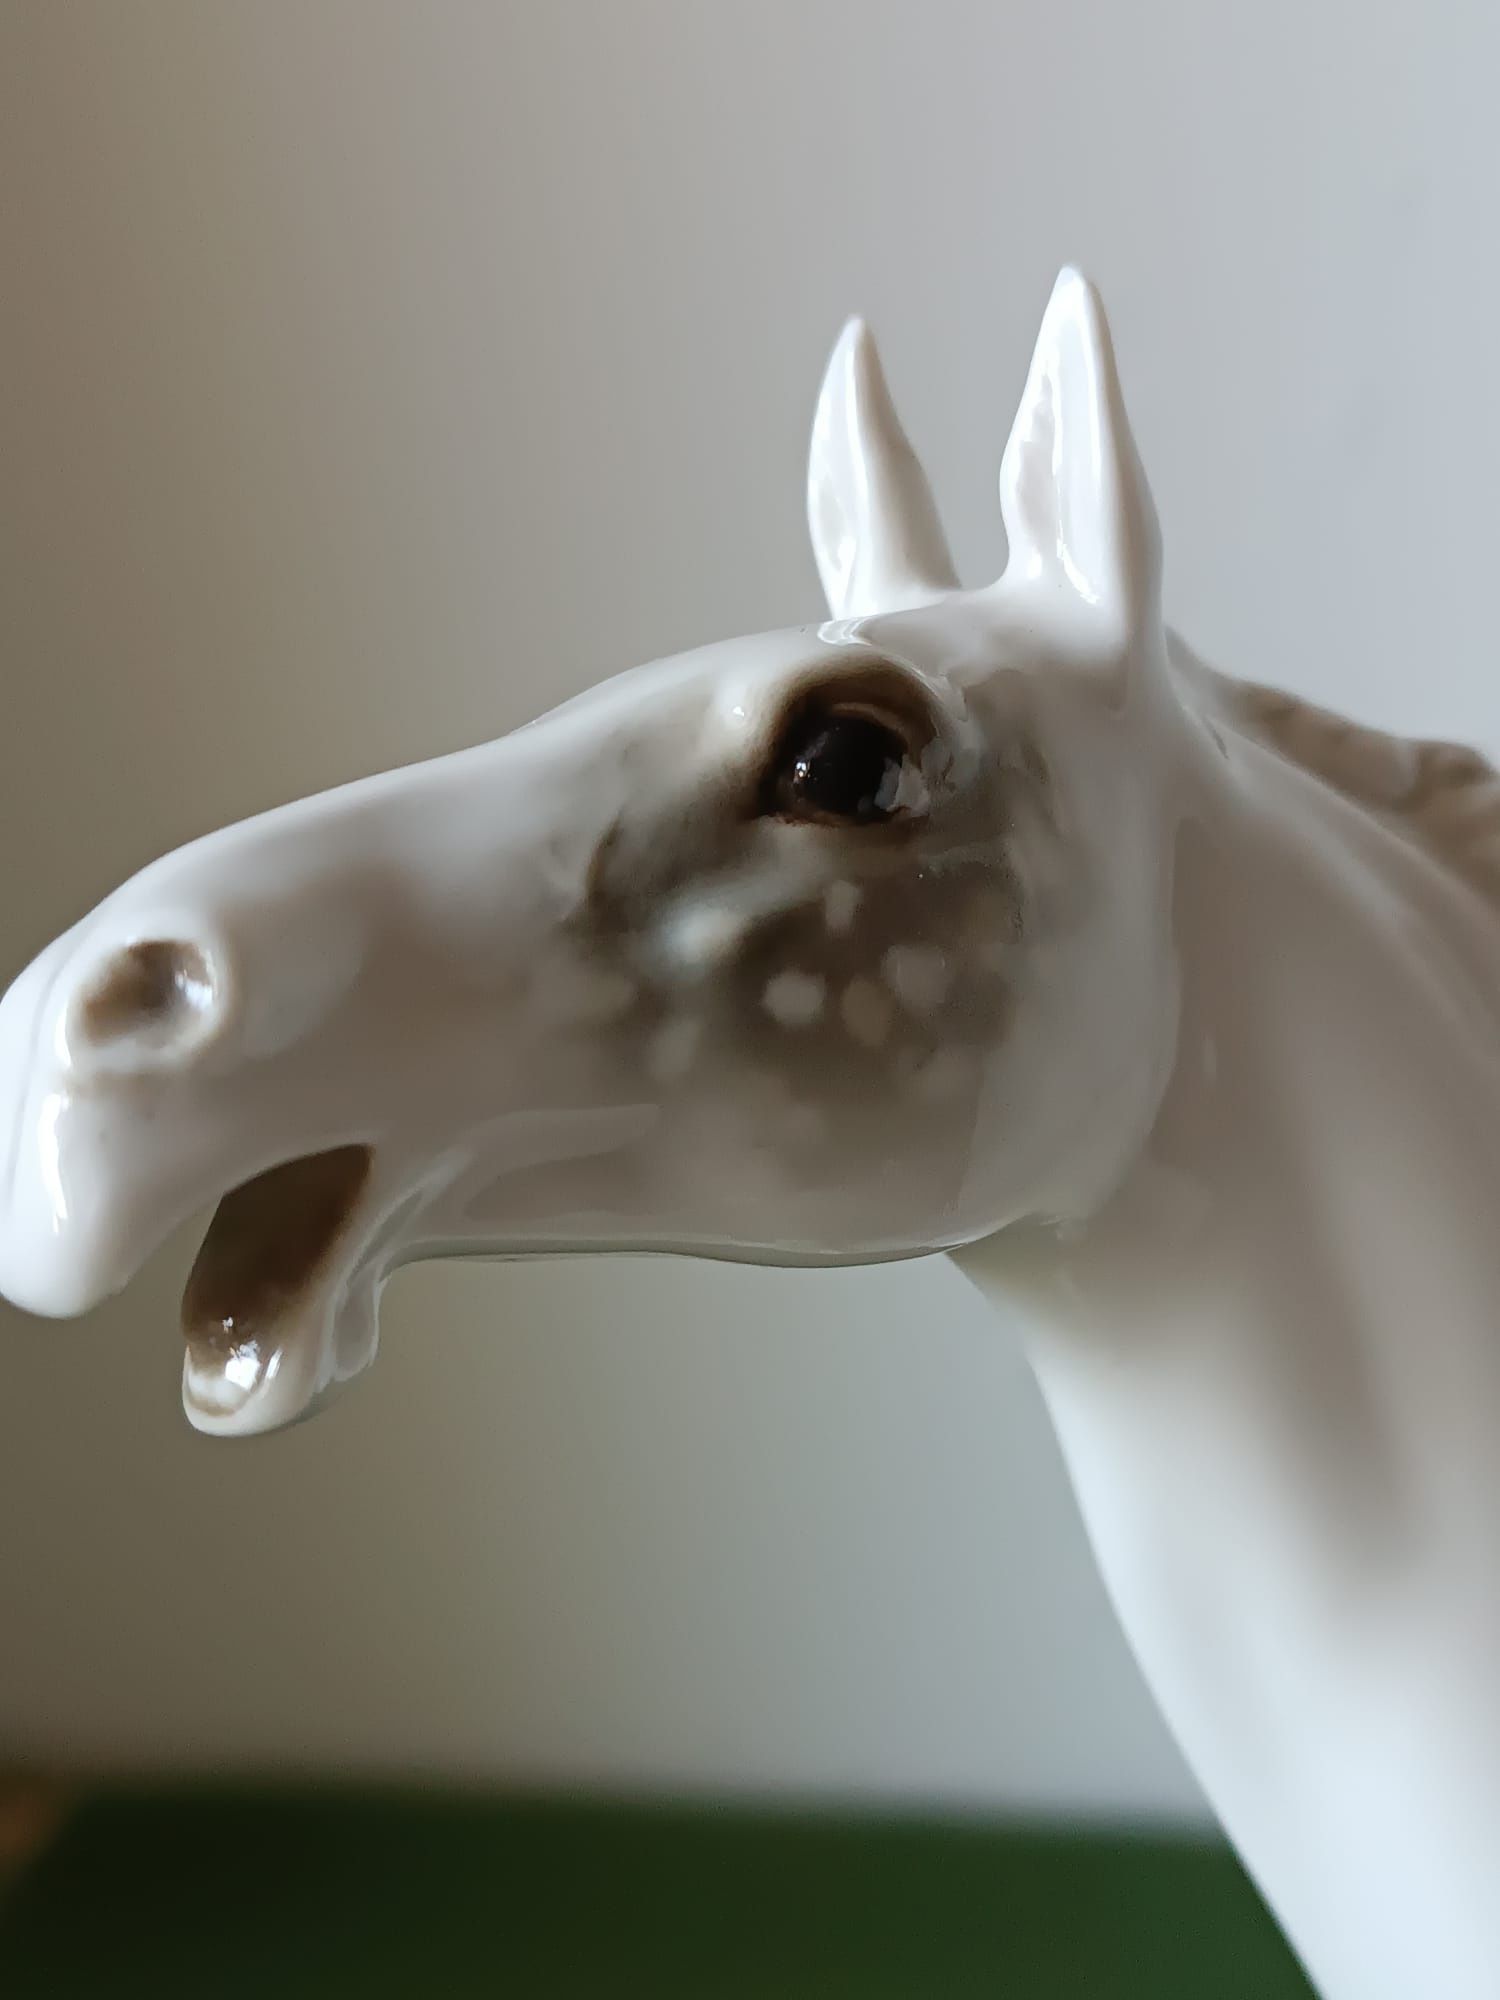 Konie w biegu porcelana Hutschenreuther Selb